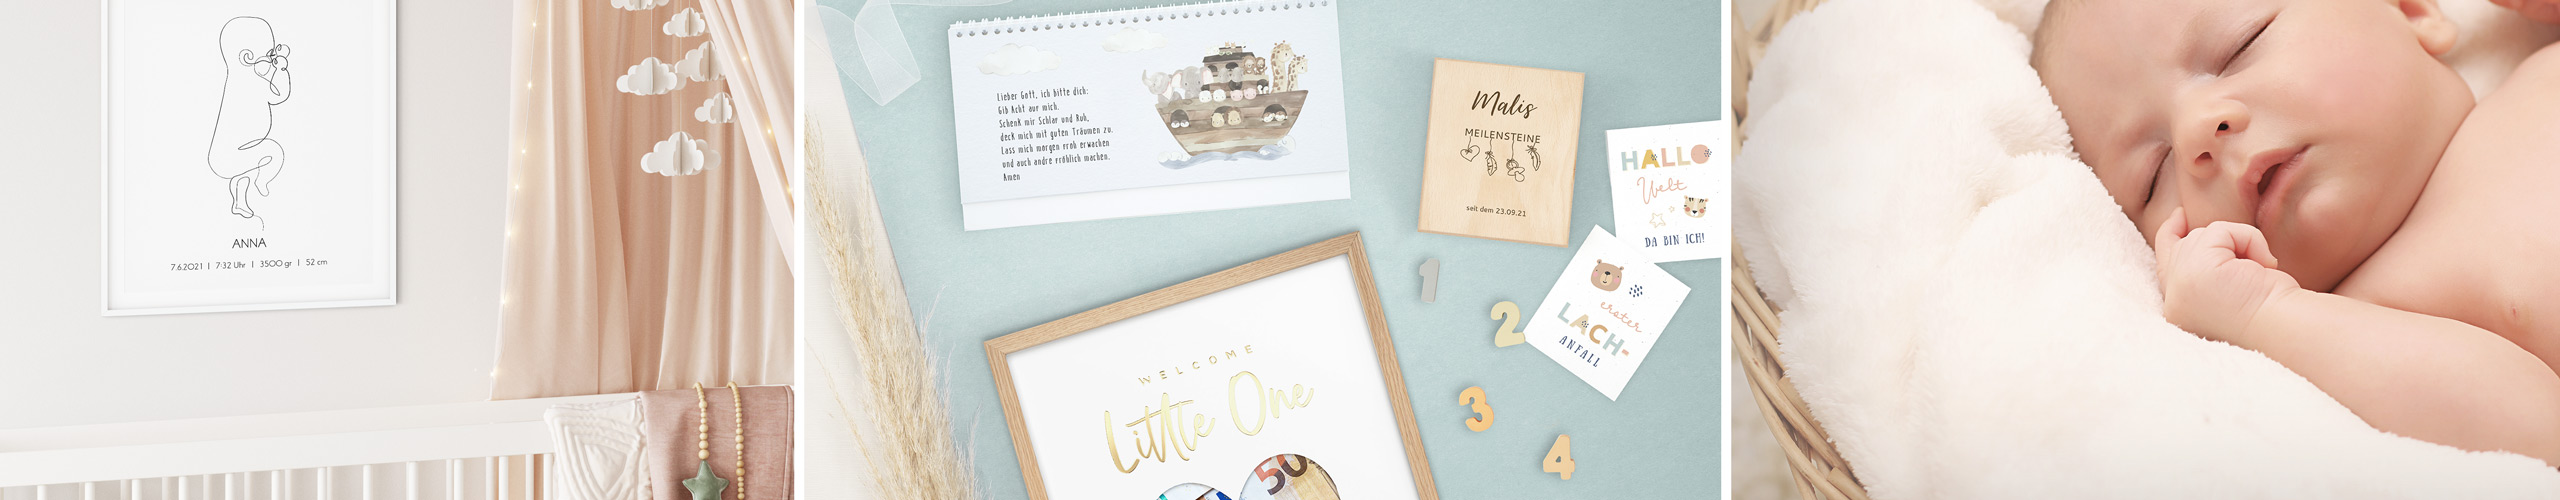 Wandbild, Meilensteinkarten-Box und Tischkalender als personalisierte Geschenke zur Geburt